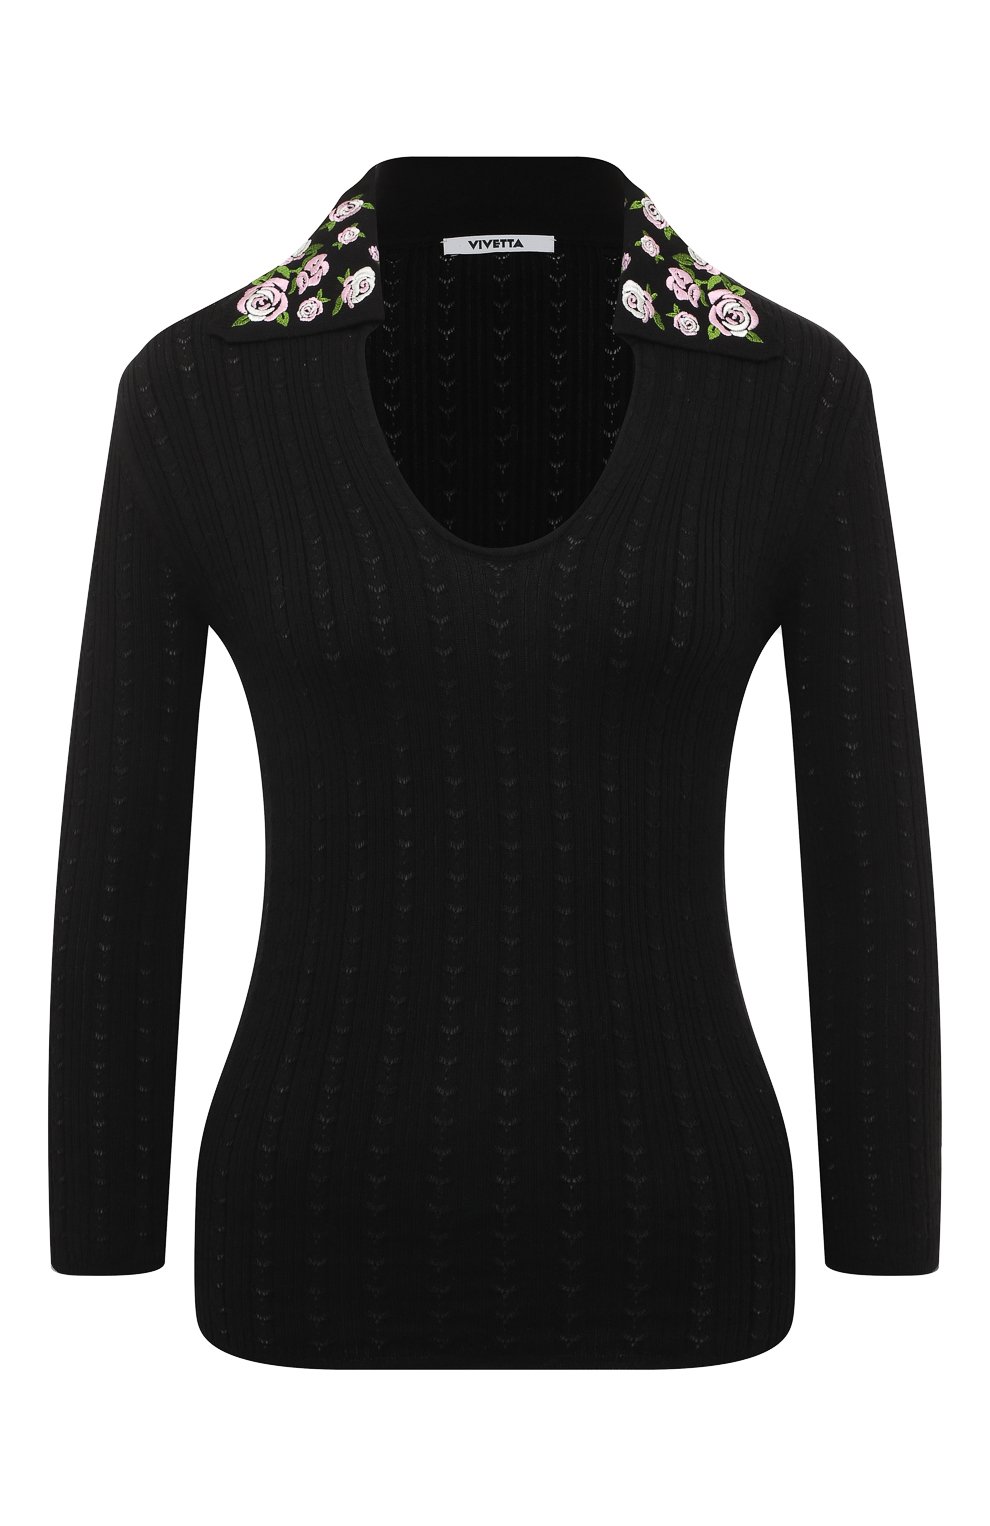 Трикотаж Vivetta, Хлопковый пуловер Vivetta, Италия, Чёрный, Хлопок: 100%;, 13266757  - купить